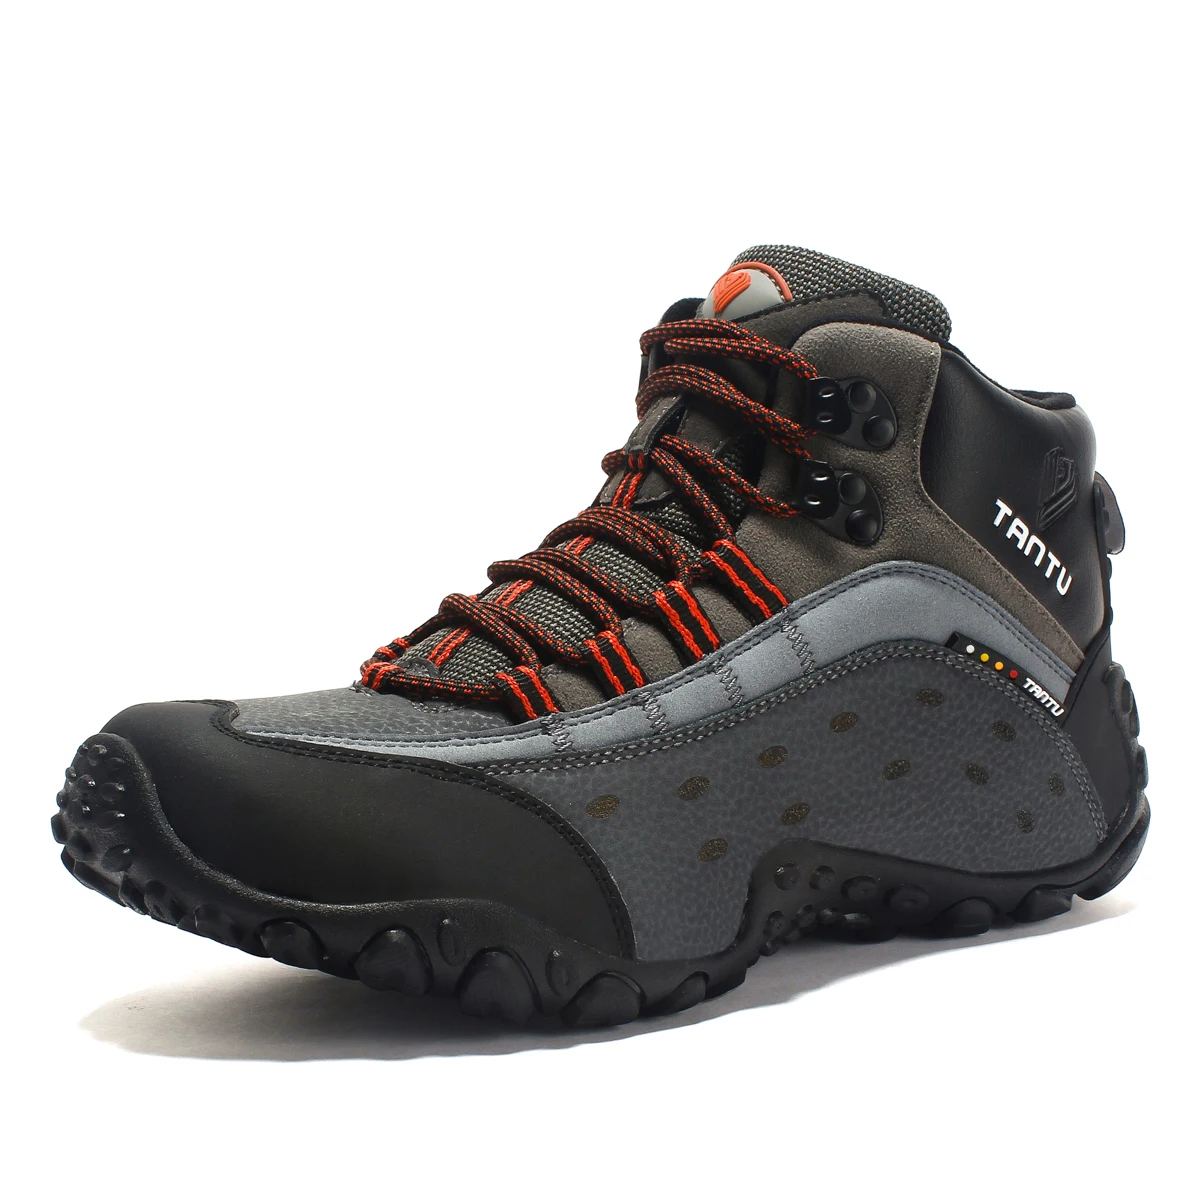 TANTU водонепроницаемые мужские кроссовки с высоким вырезом из натуральной кожи дышащие походные треккинговые ботинки противоскользящая спортивная обувь для кемпинга